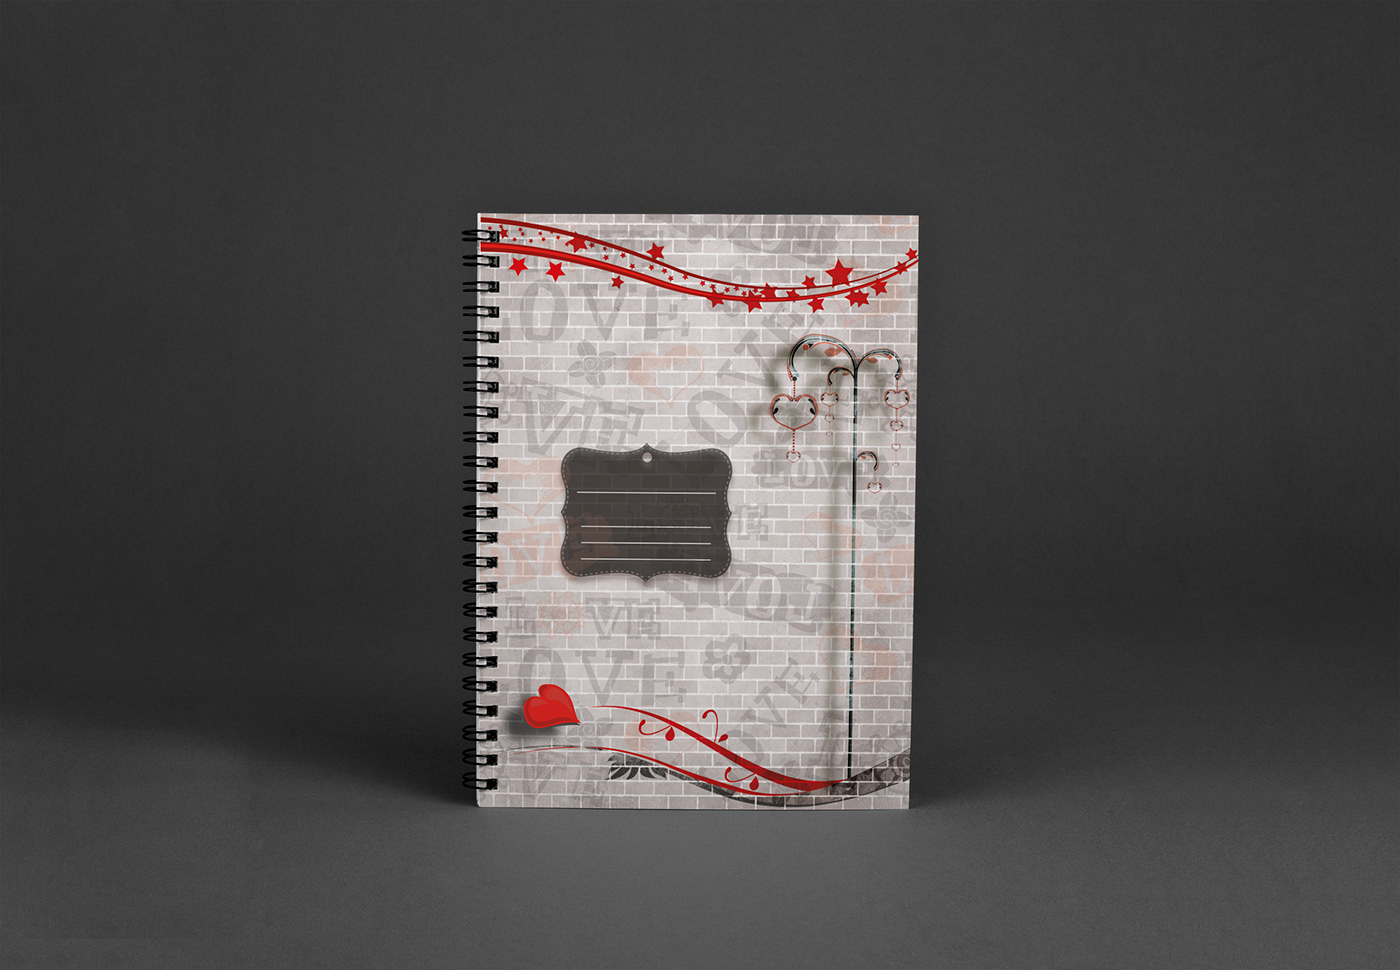 cuadernos ilustrados girls caratulas Anillados diseño gráfico desing book